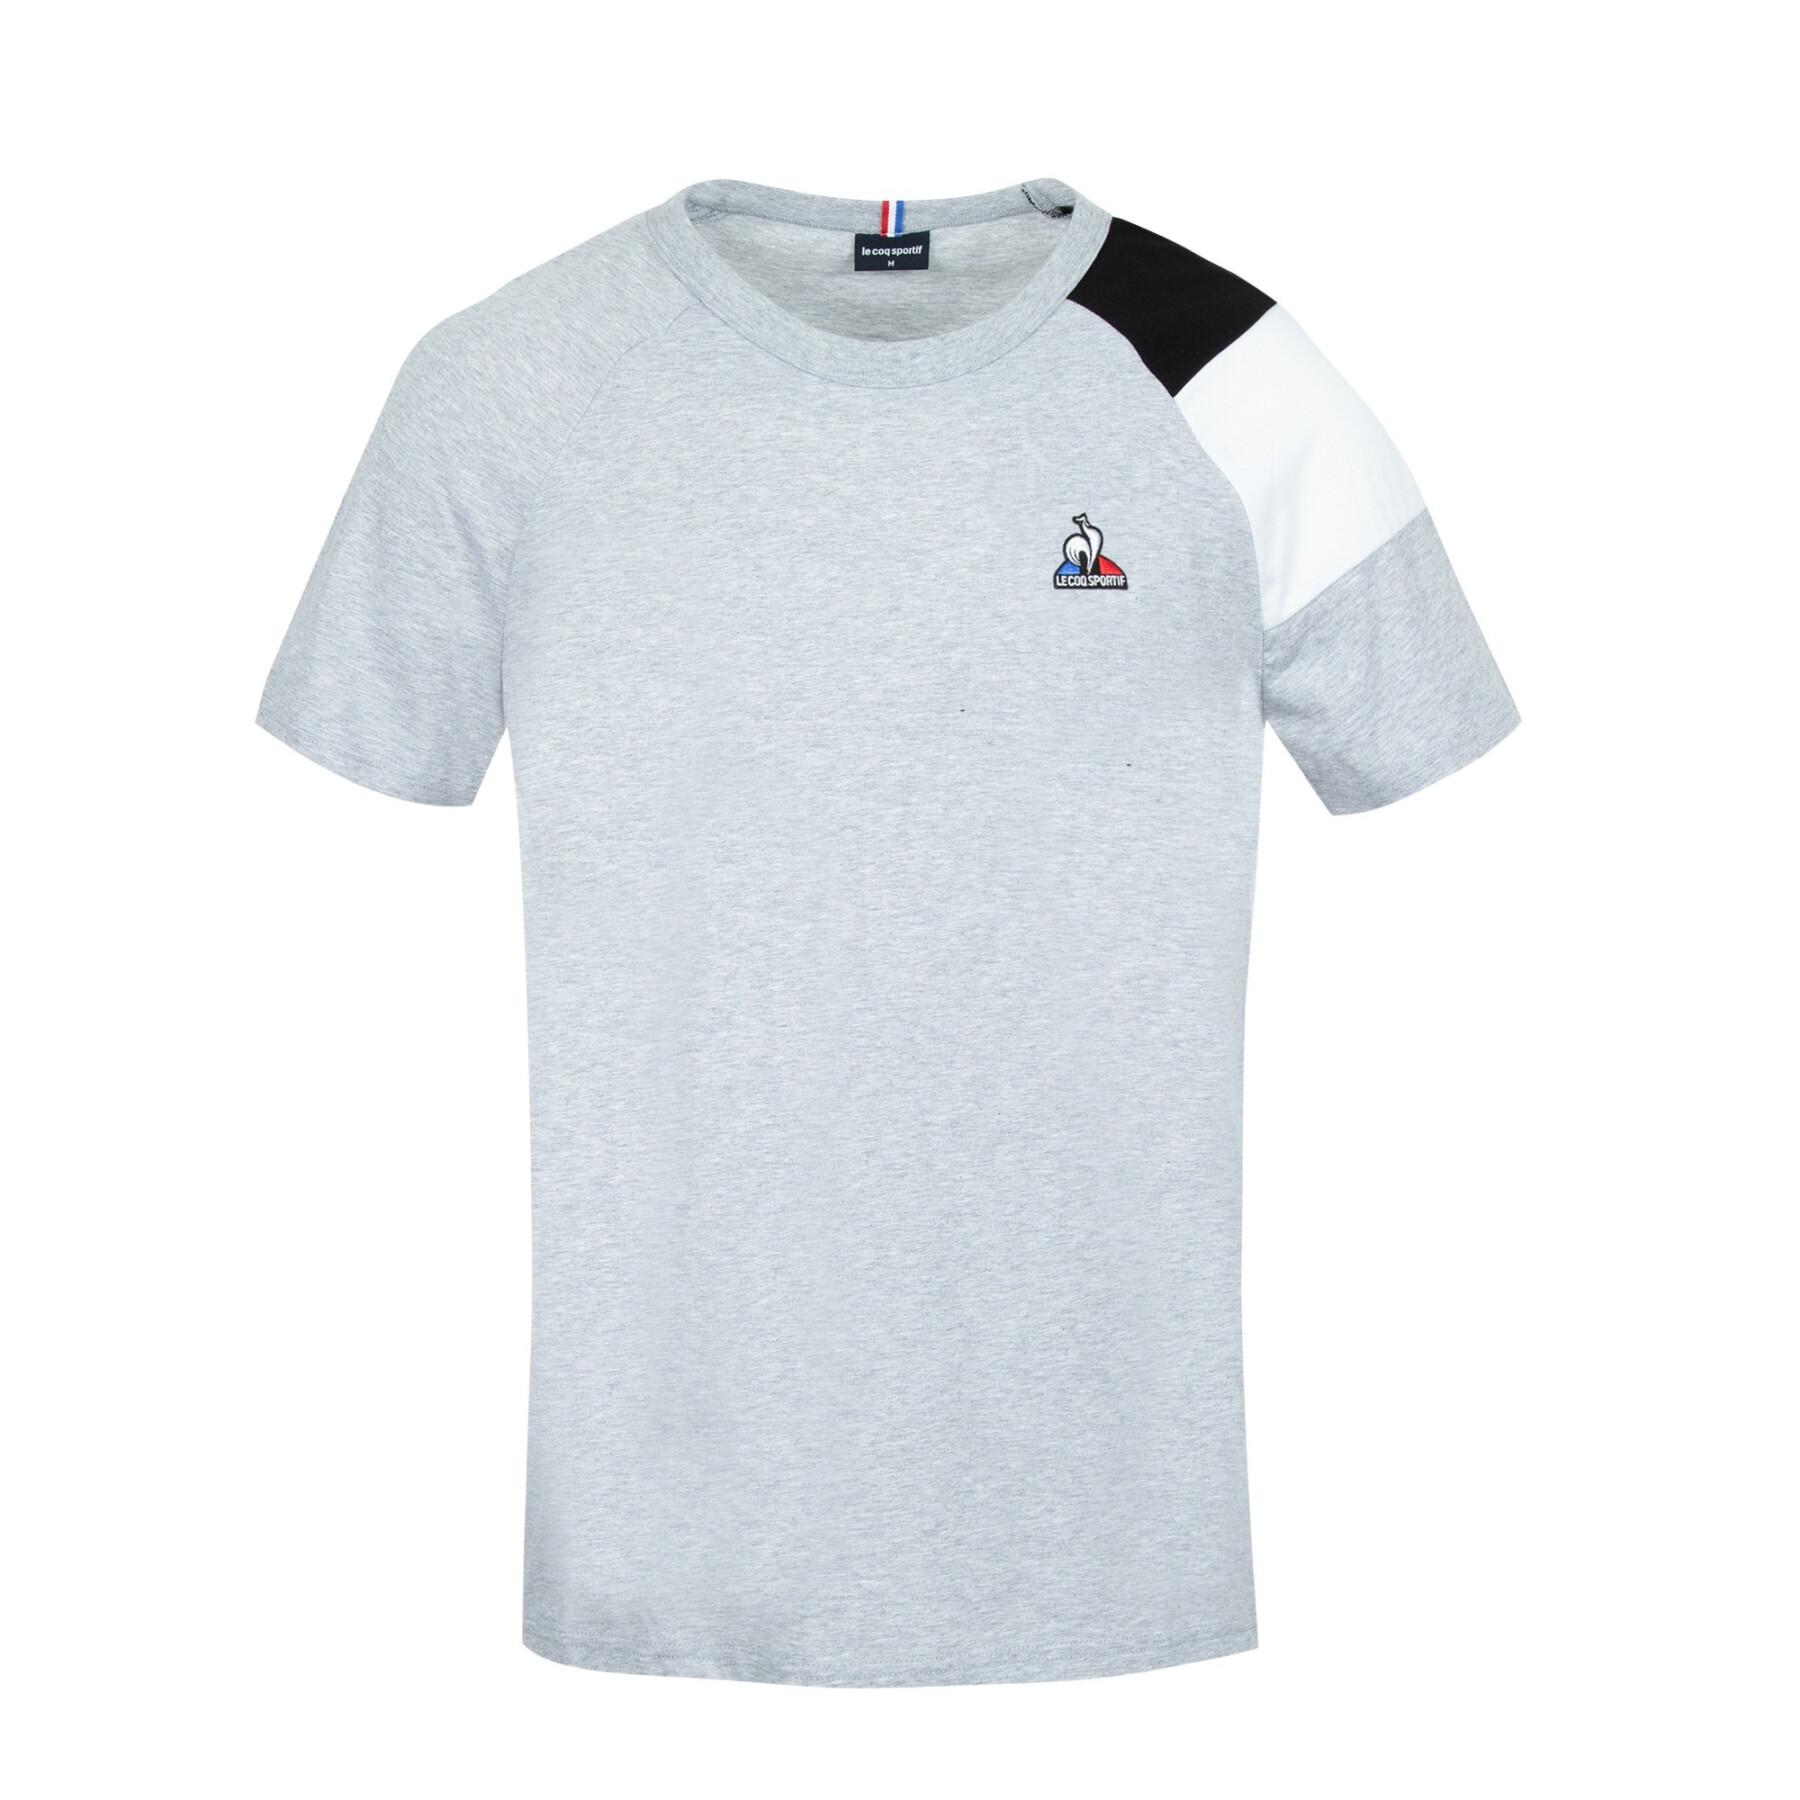 T-shirt Le Coq Sportif Bat N°1 - Polos / - Vêtements Homme - Lifestyle